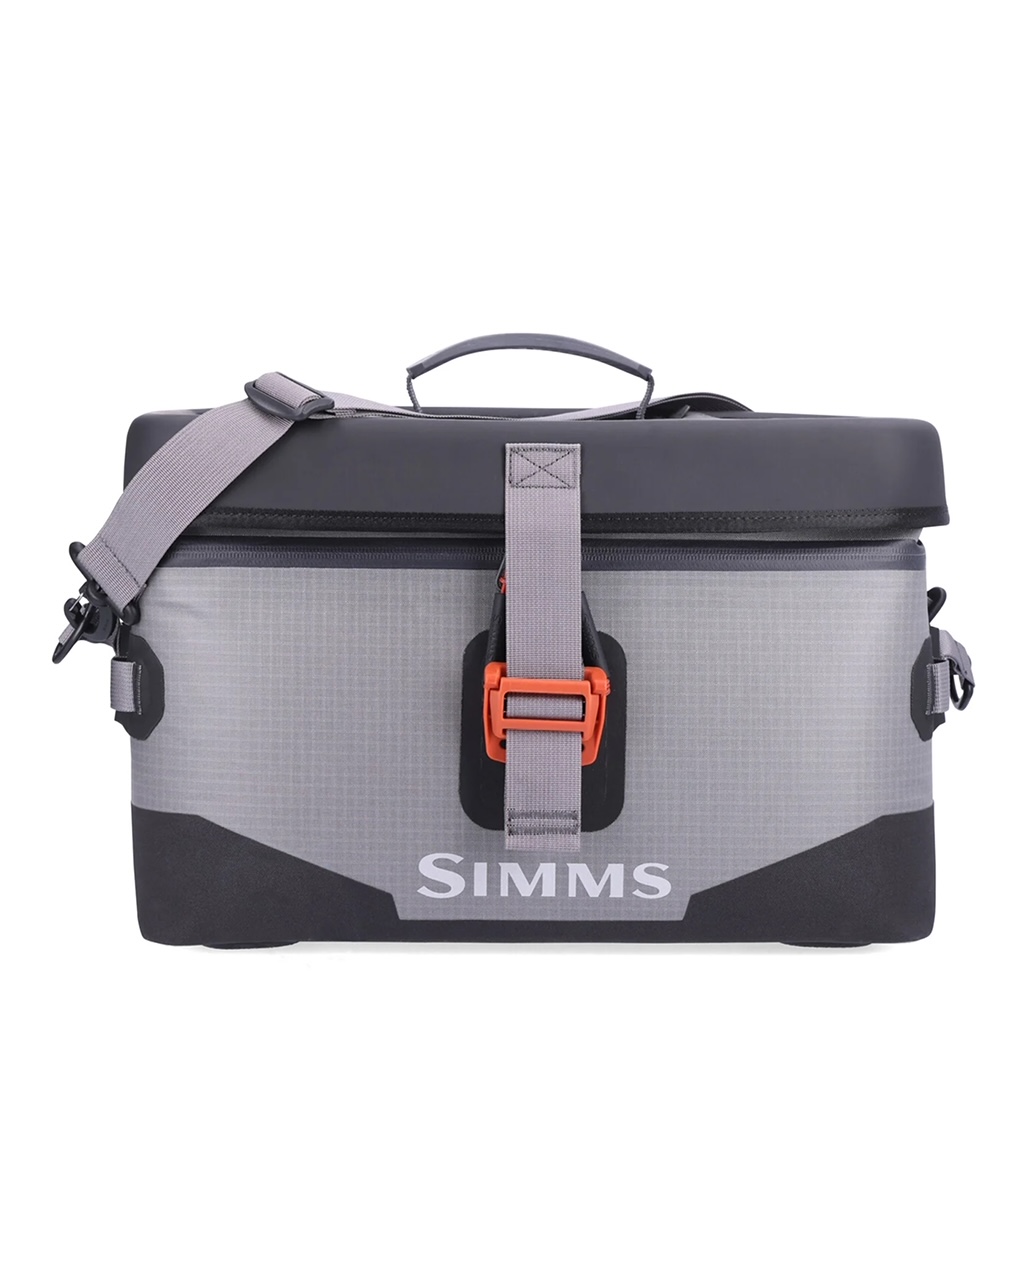 Simms Dry Creek Boat Bag - Large (25L)